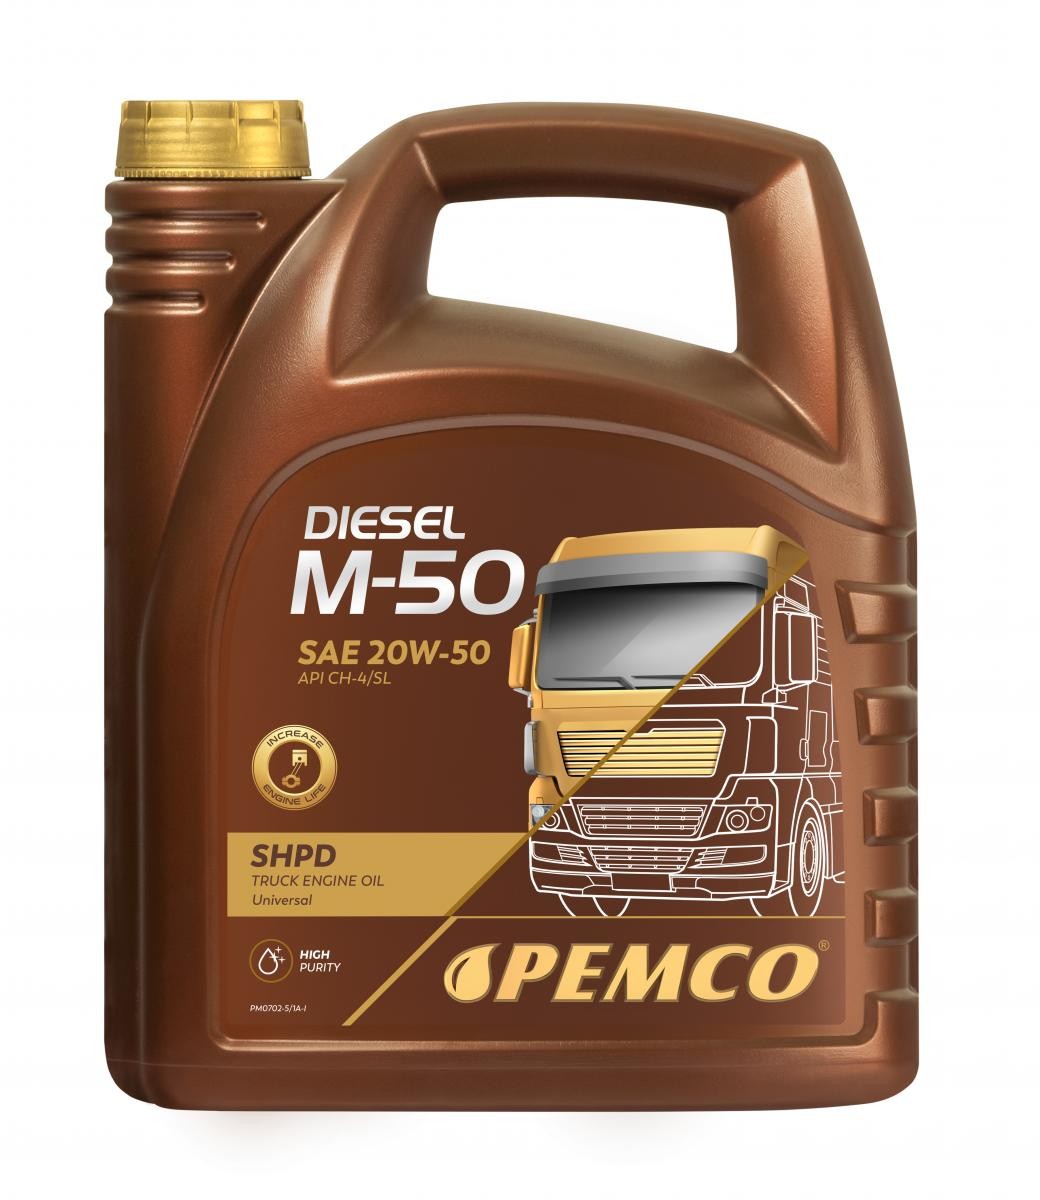 Motorenöl ACEA E3 20W-50 Diesel - PEMCO PM0702-5 Truck SHPD, DIESEL M-50 SHPD